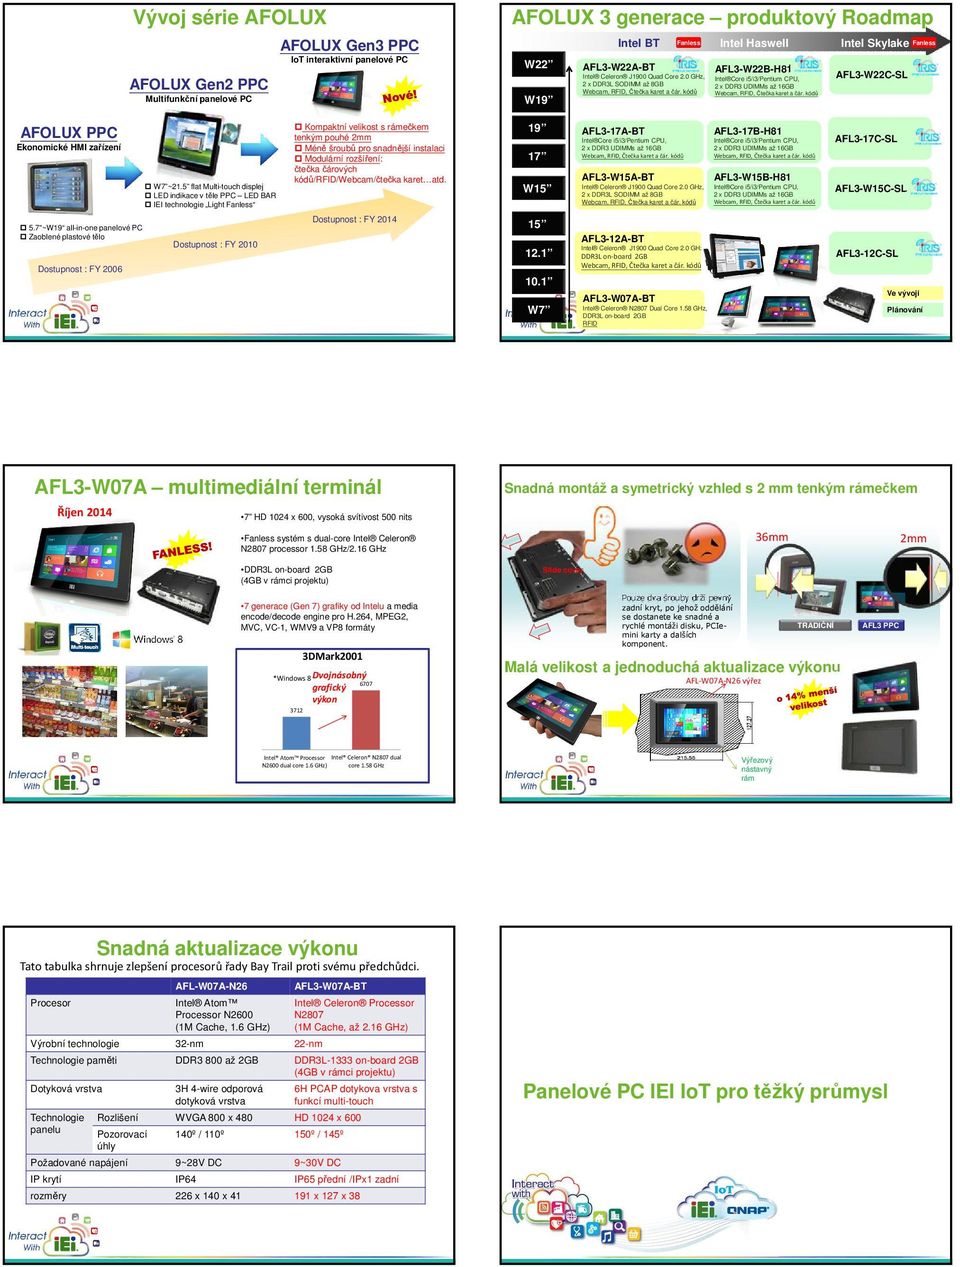 kódů Webcam, RFID, Čtečka karet a čár. kódů Intel Skylake AFL3-W22C-SL Fanless AFOLUX PPC Ekonomické HMI zařízení W7 ~21.